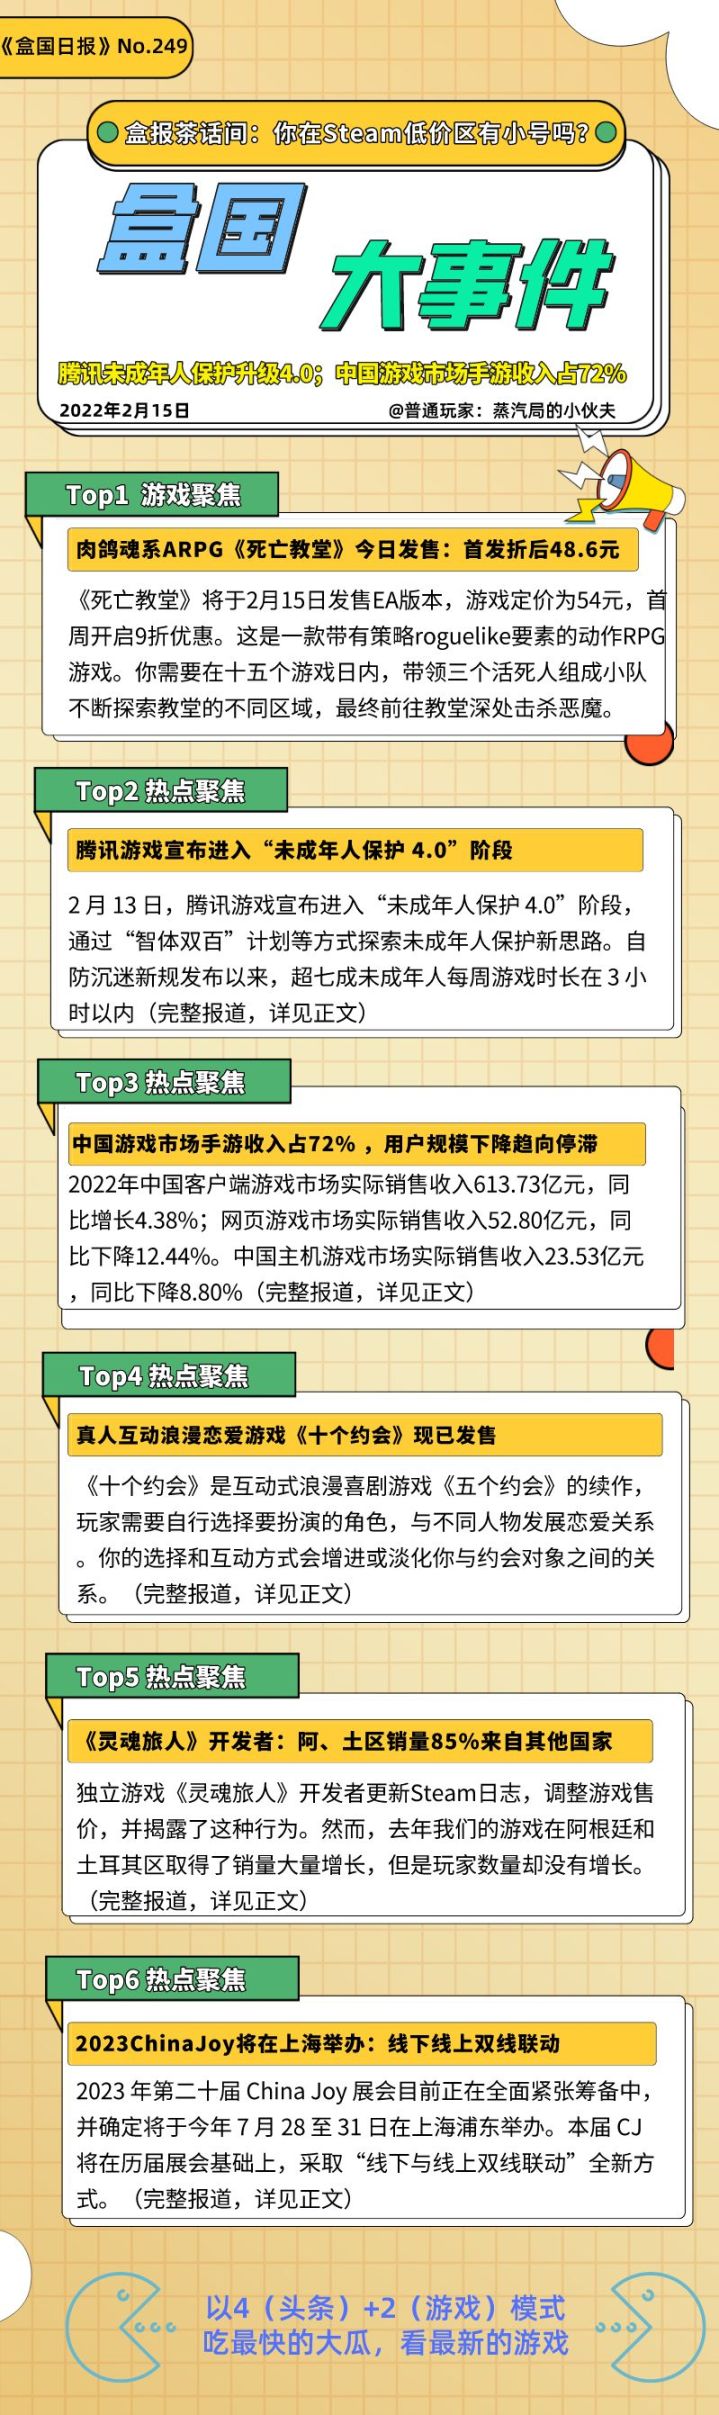 【PC遊戲】盒國日報|騰訊未成年人保護升級4.0；中國遊戲市場手遊收入佔72%-第0張